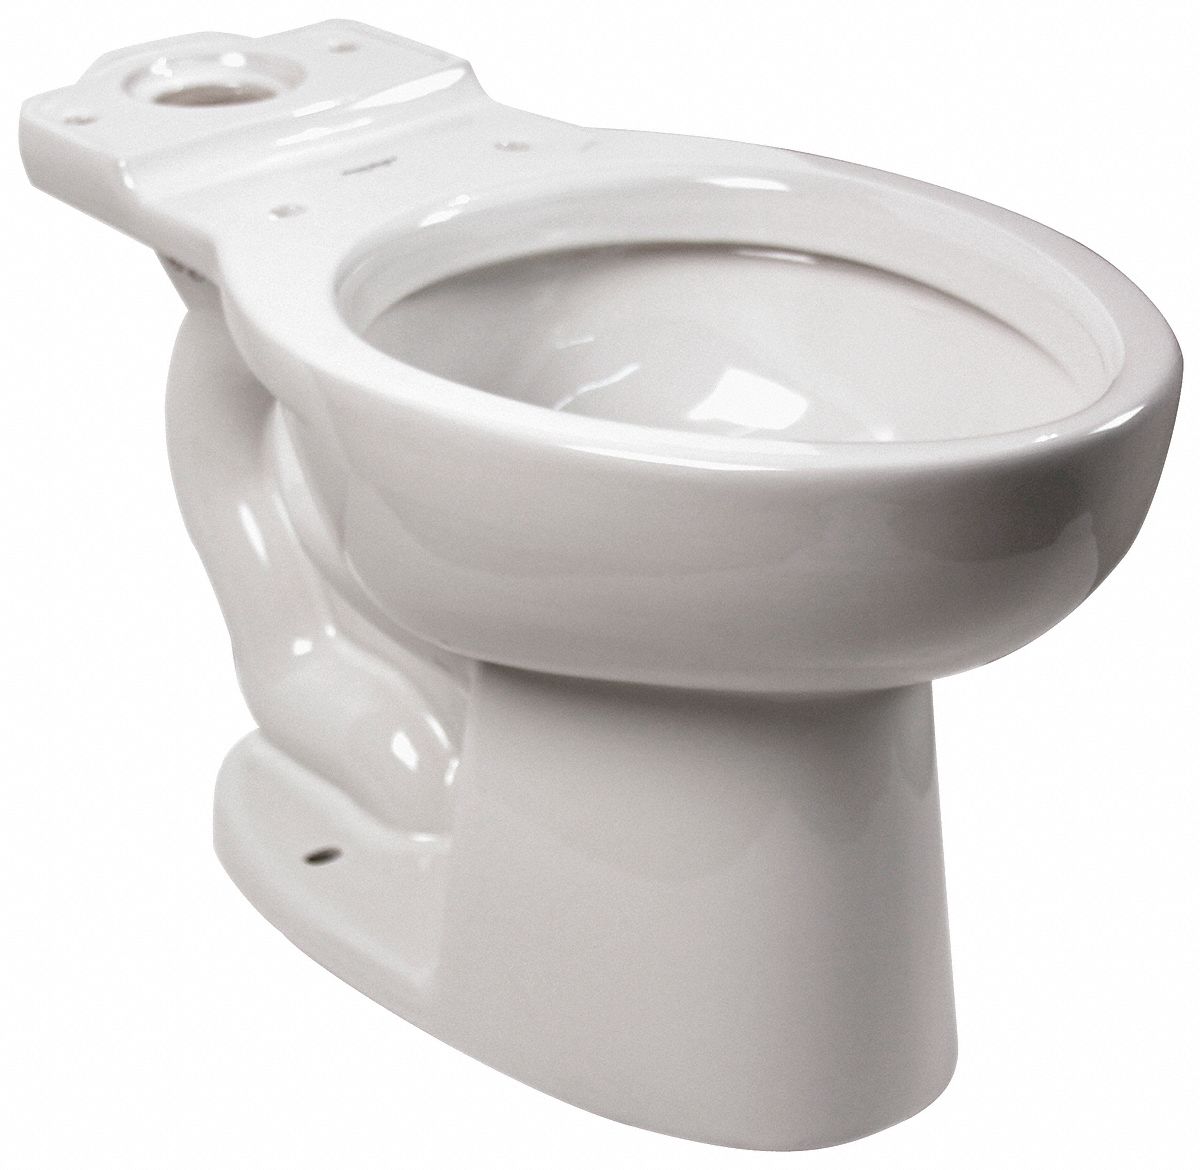 Toilet Bowl, 1.1/1.6 Gallons per Flush 